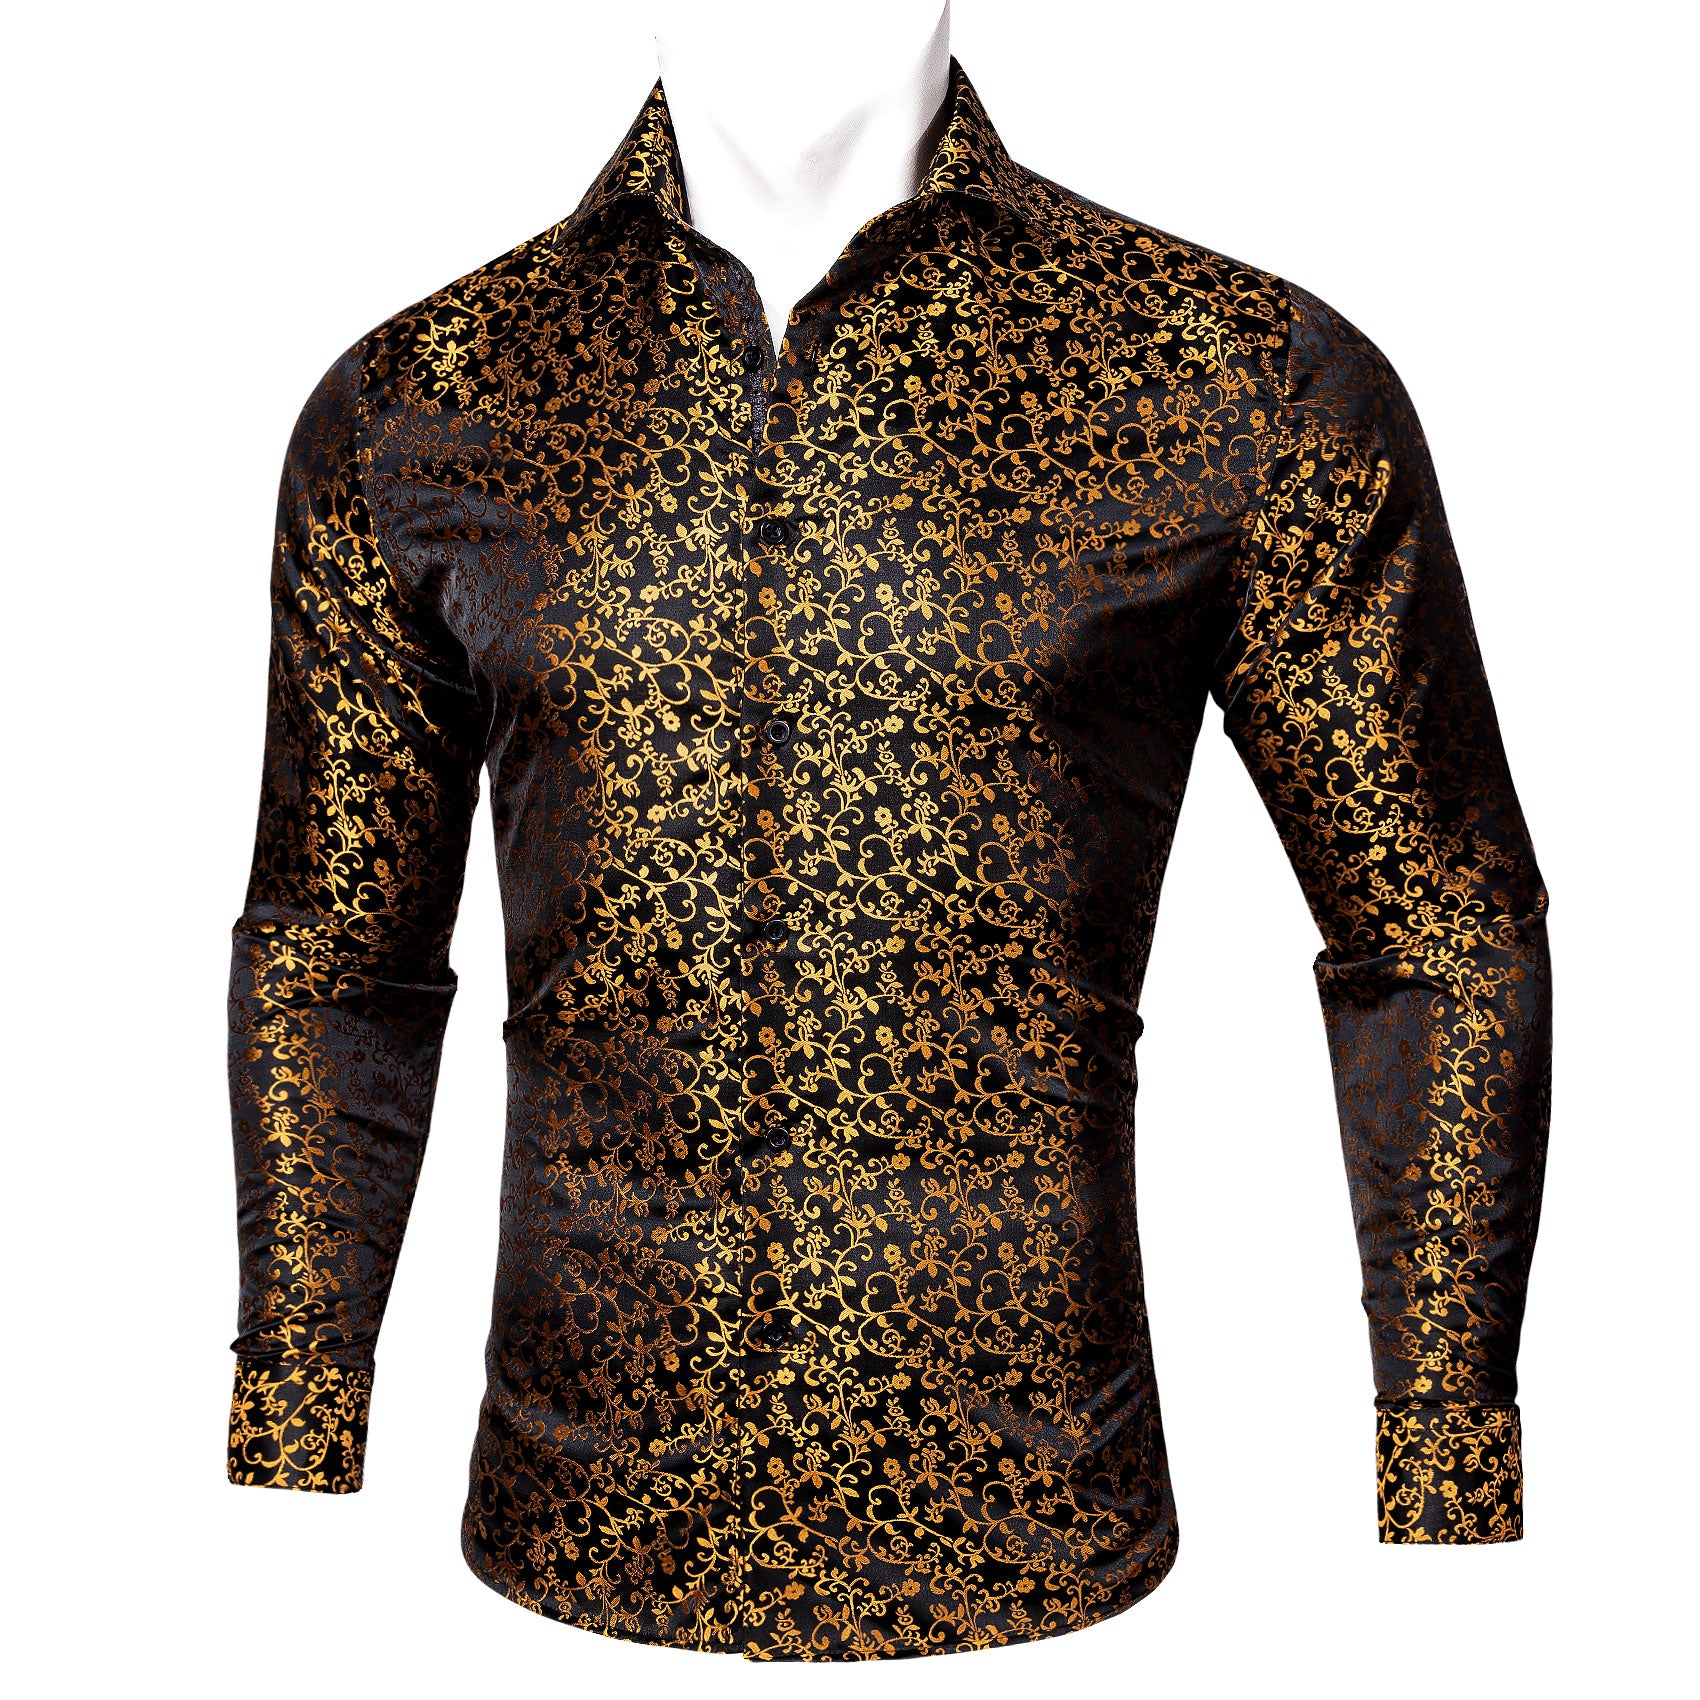 Barry.wang Button Down Shirt Black Gold Floral Silk Long Sleeve Shirt